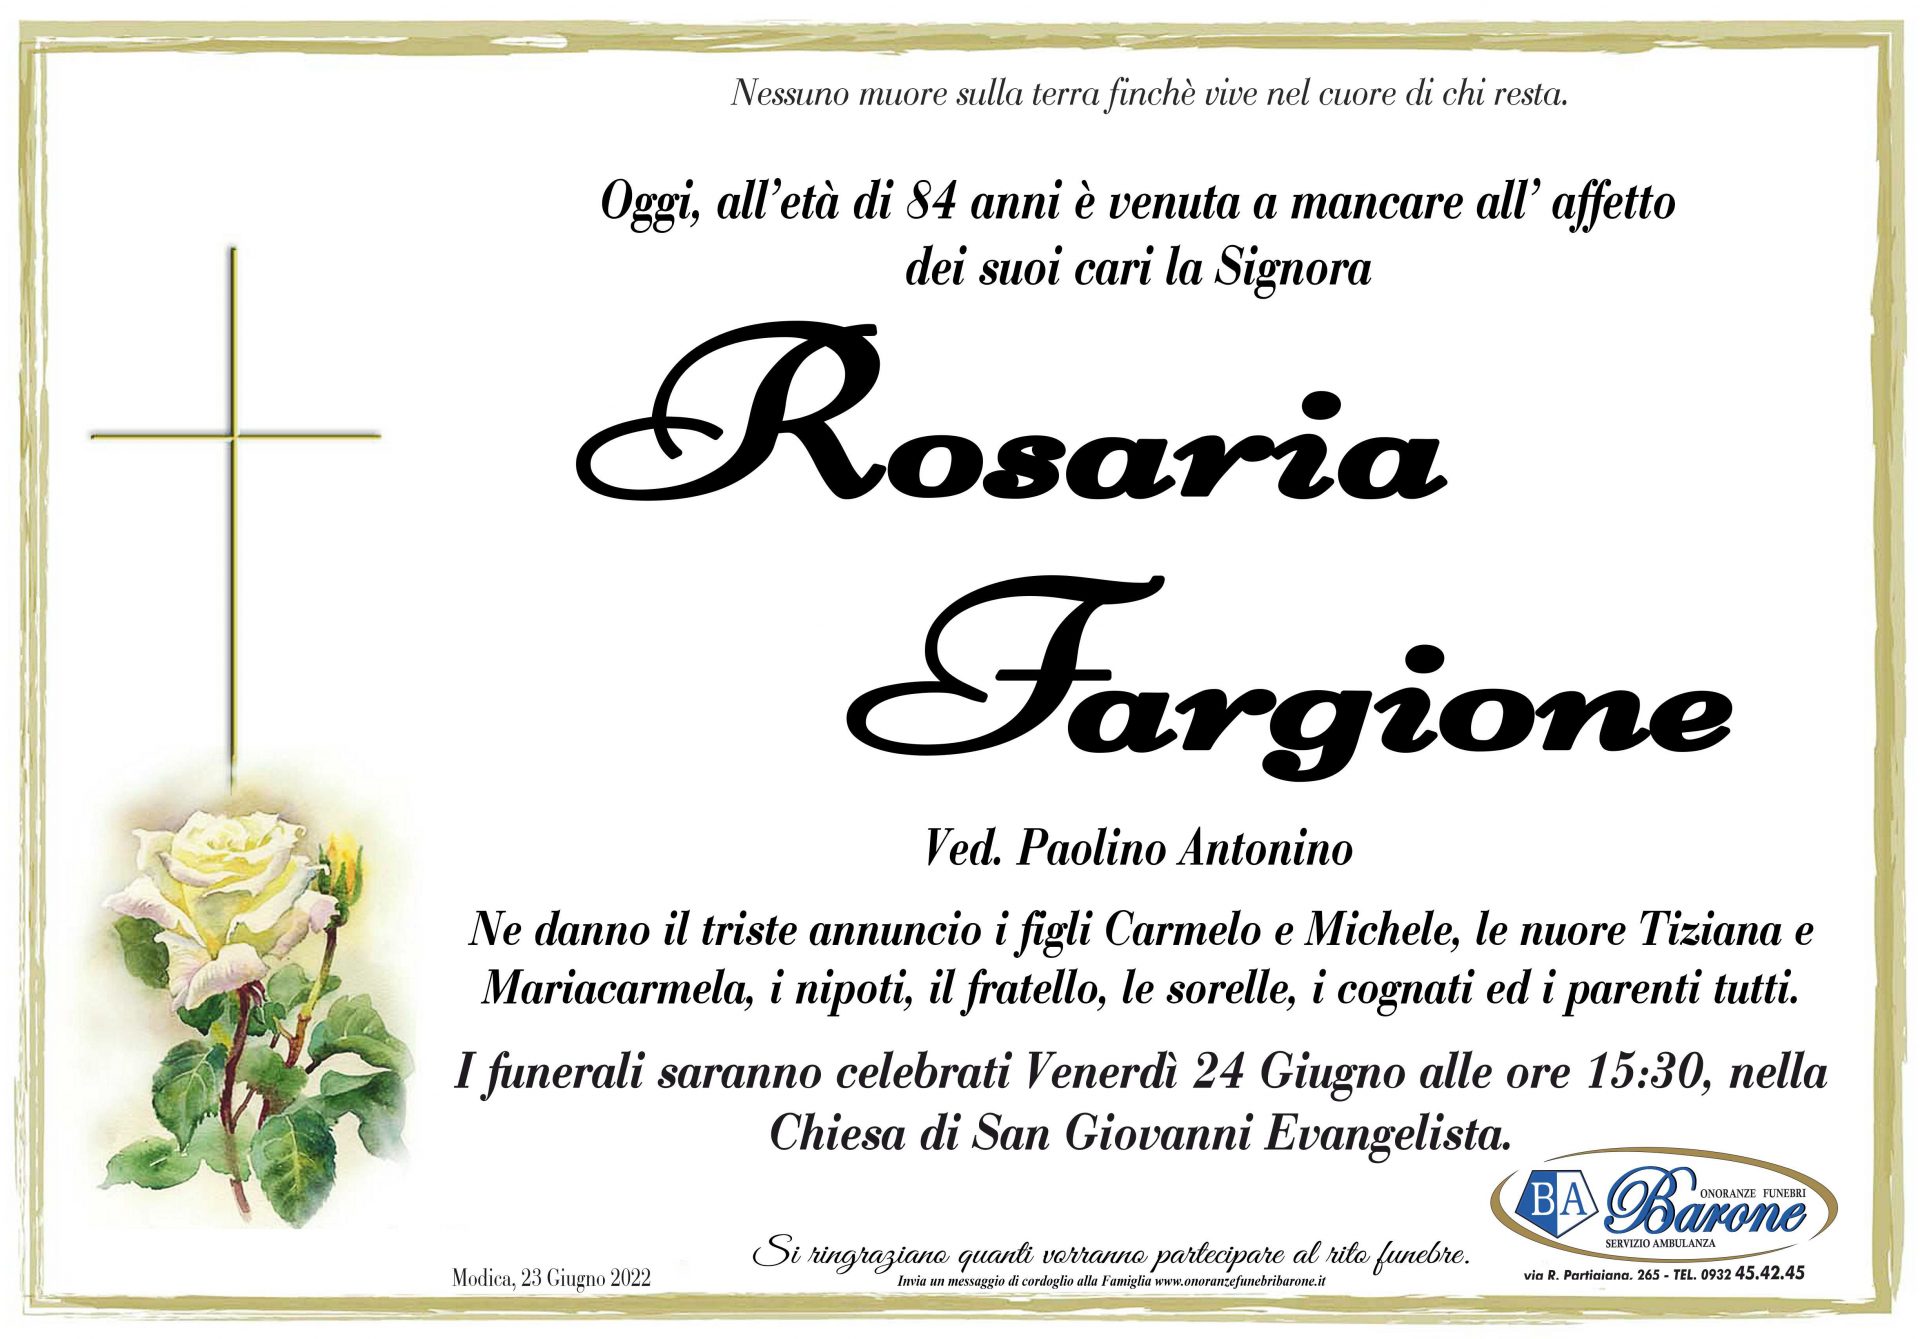 Rosaria Fargione